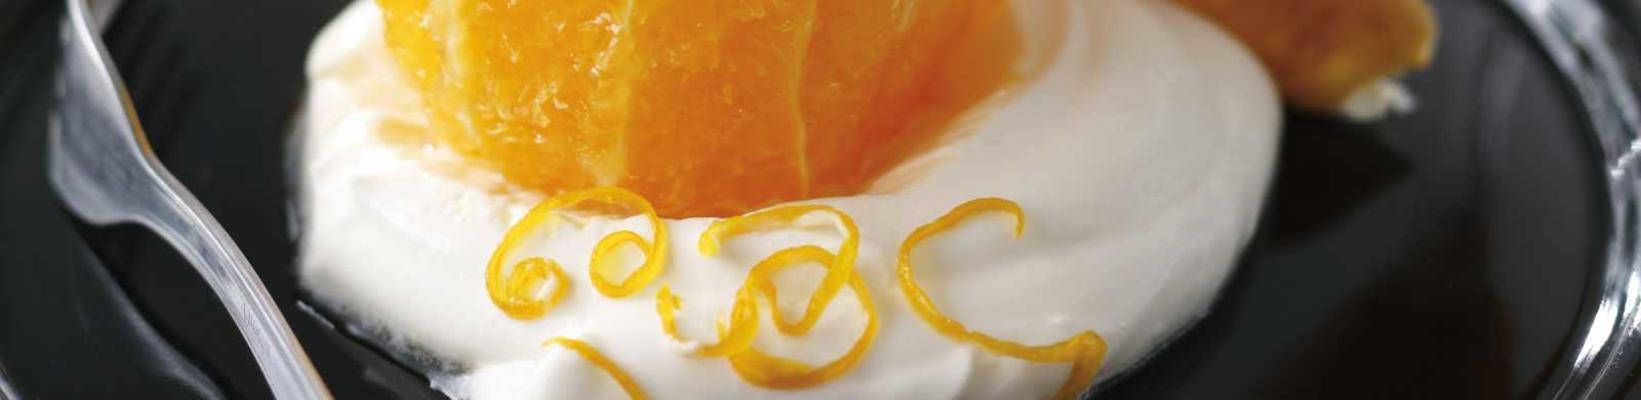 caramel oranges with orange cream